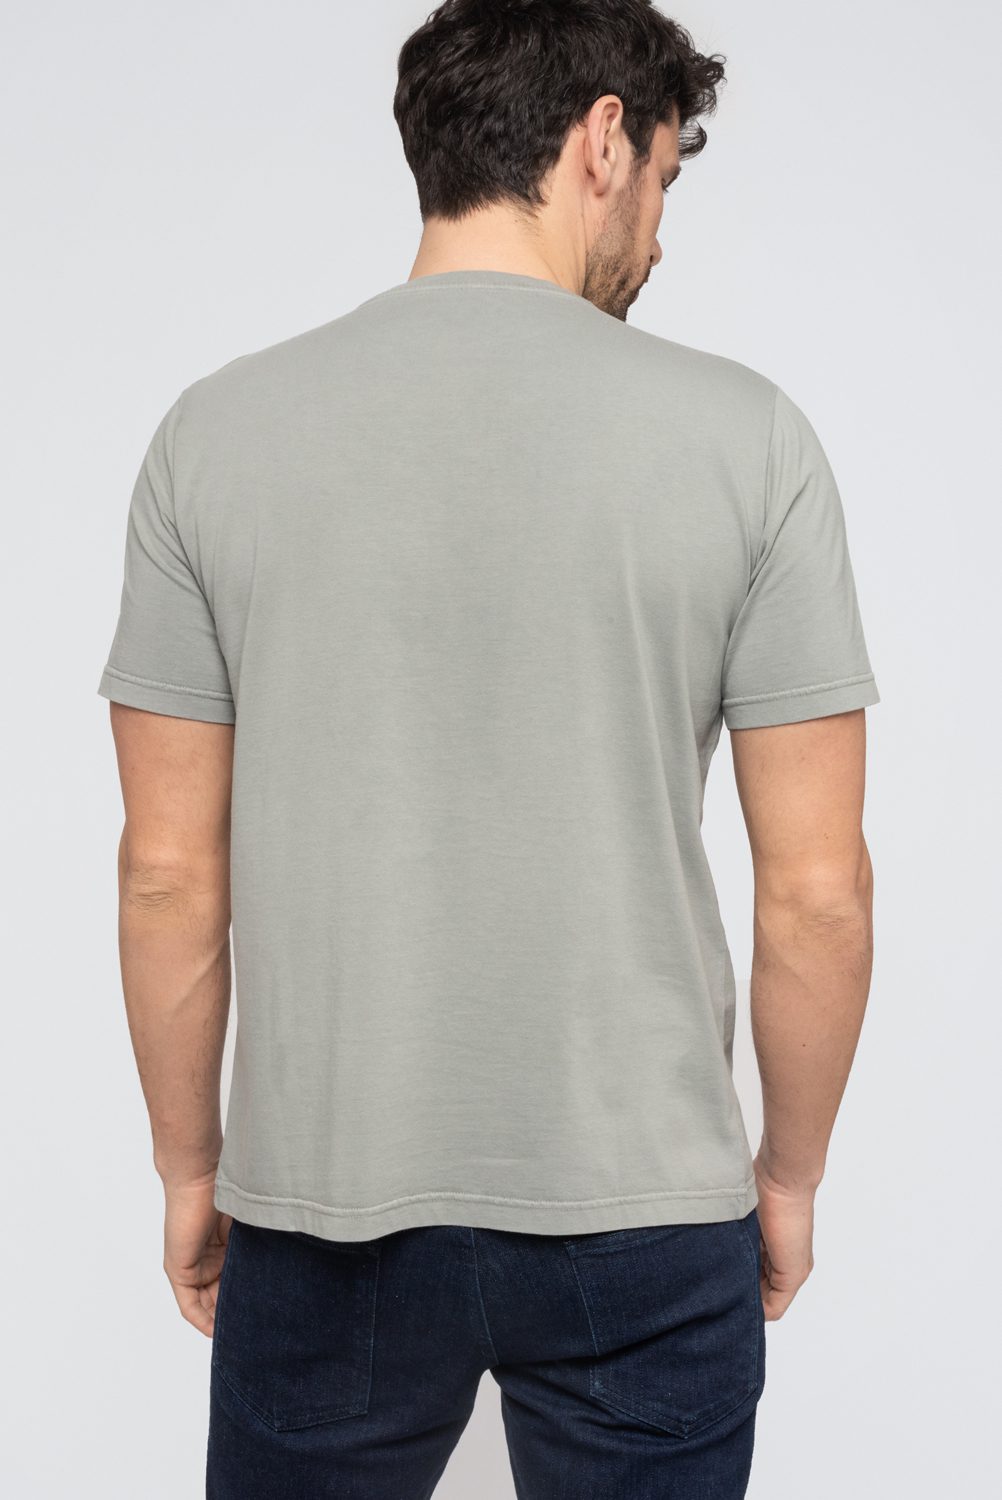 KIBO - T-shirt 100% Coton BIO - GRIS